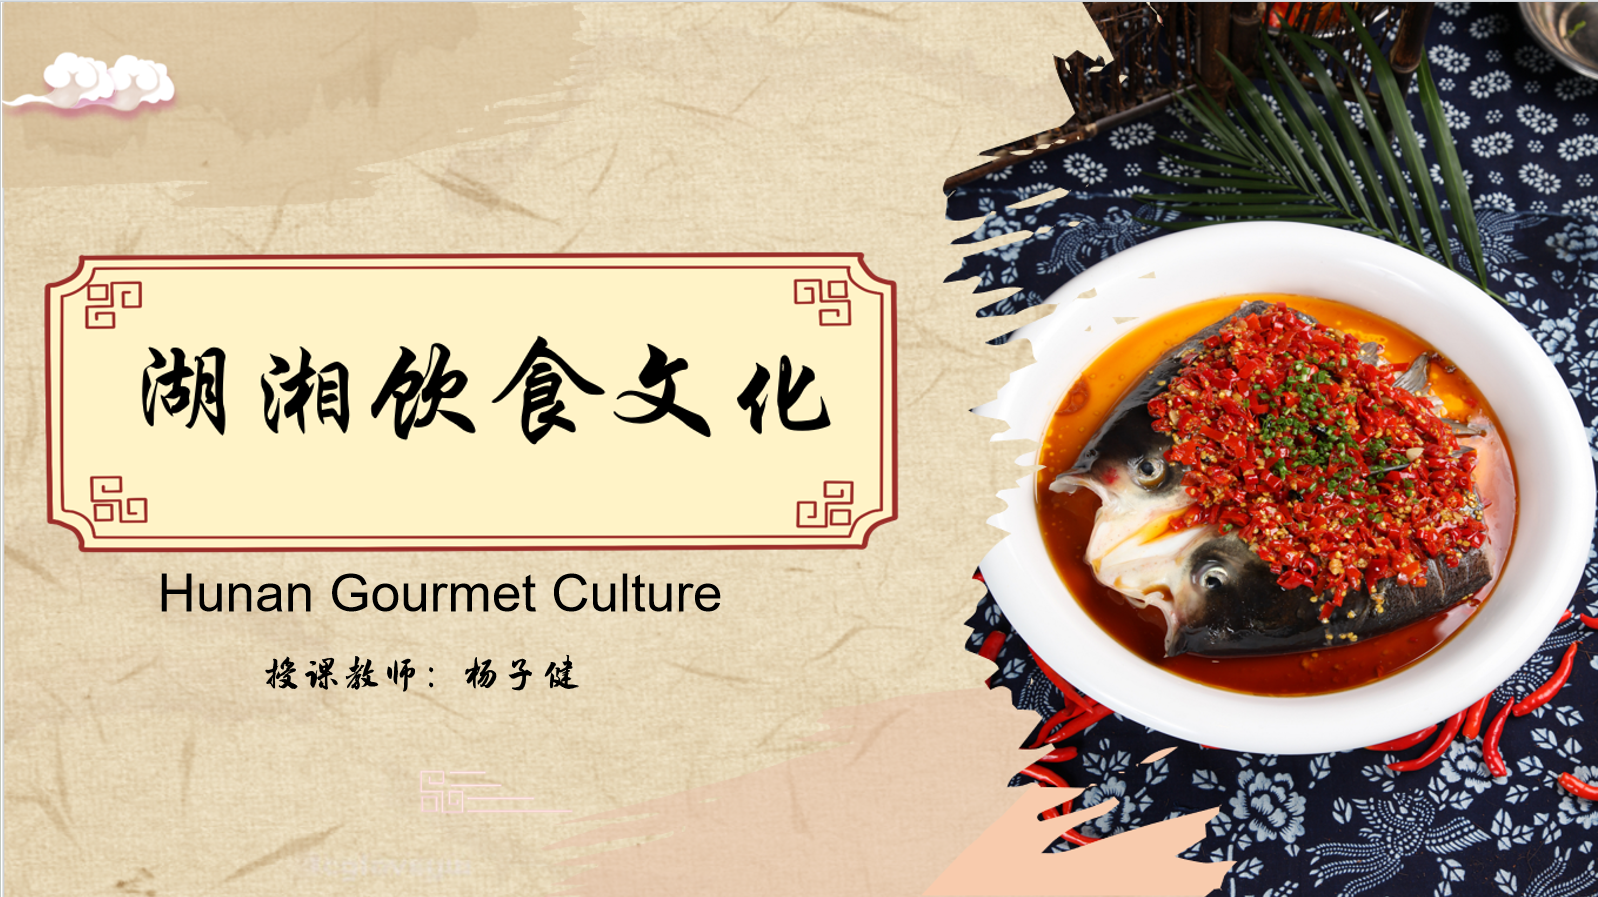 Hunan Gourmet Culture